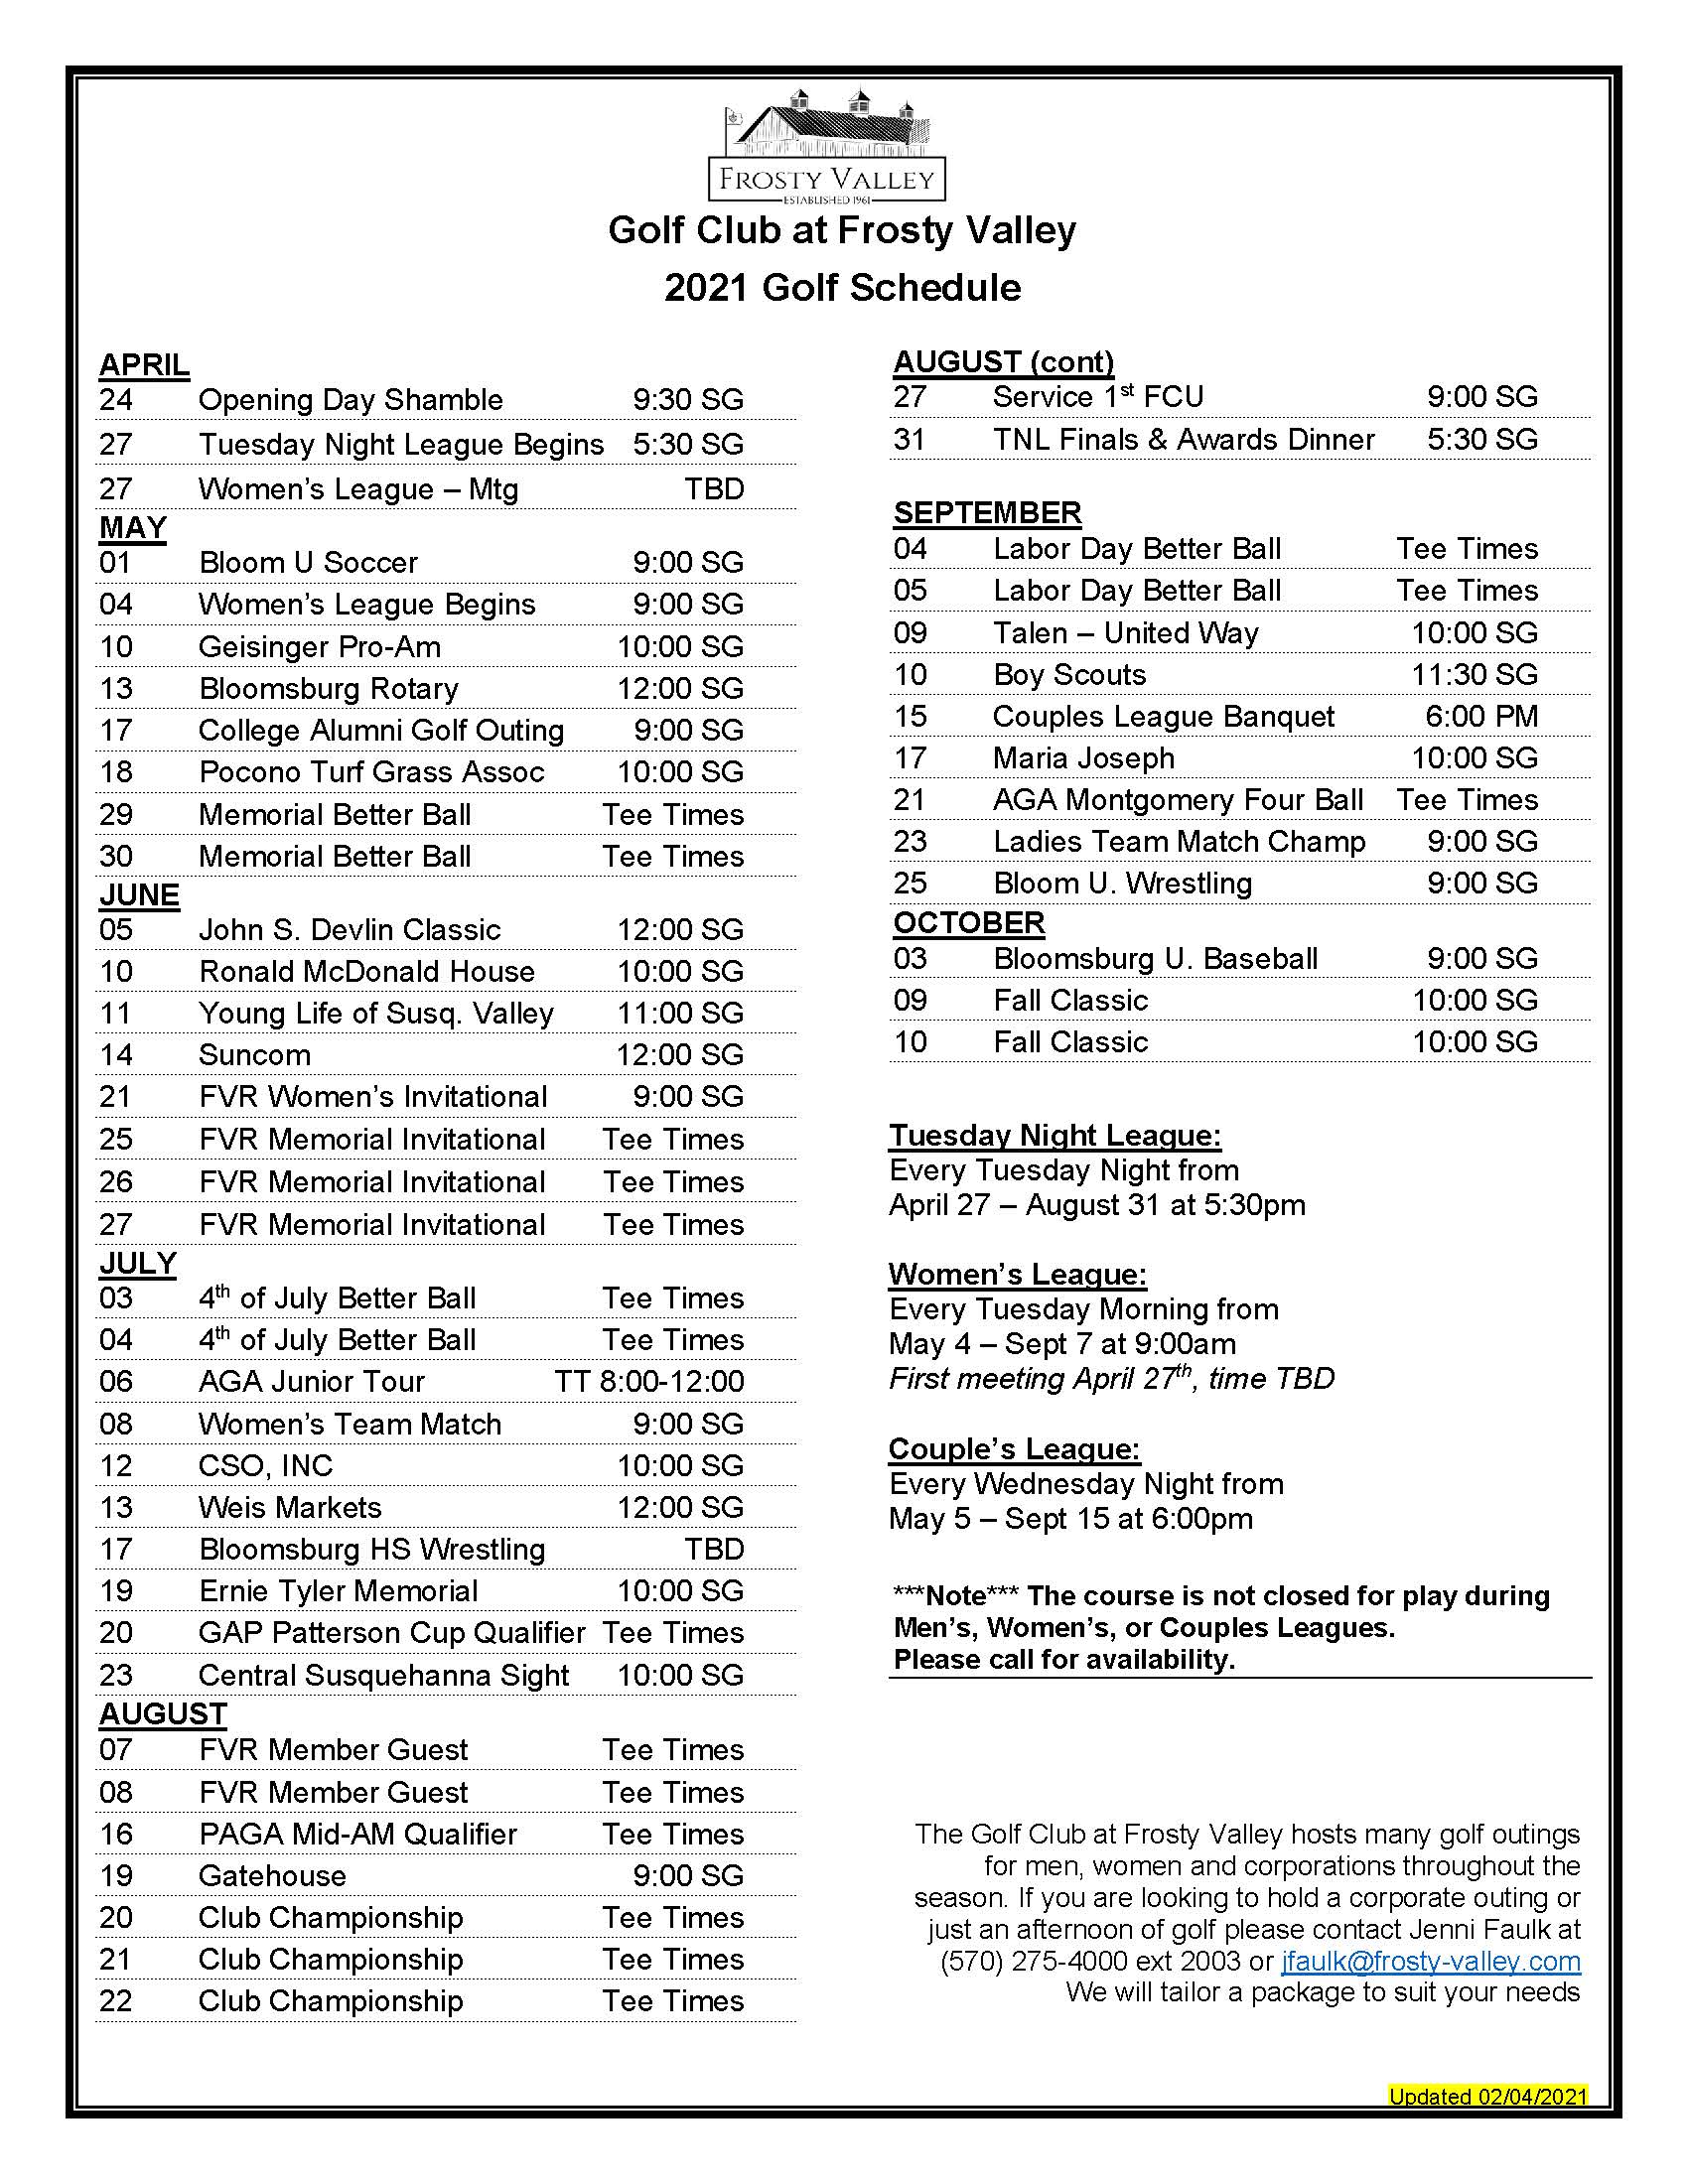 senior golf tour schedule